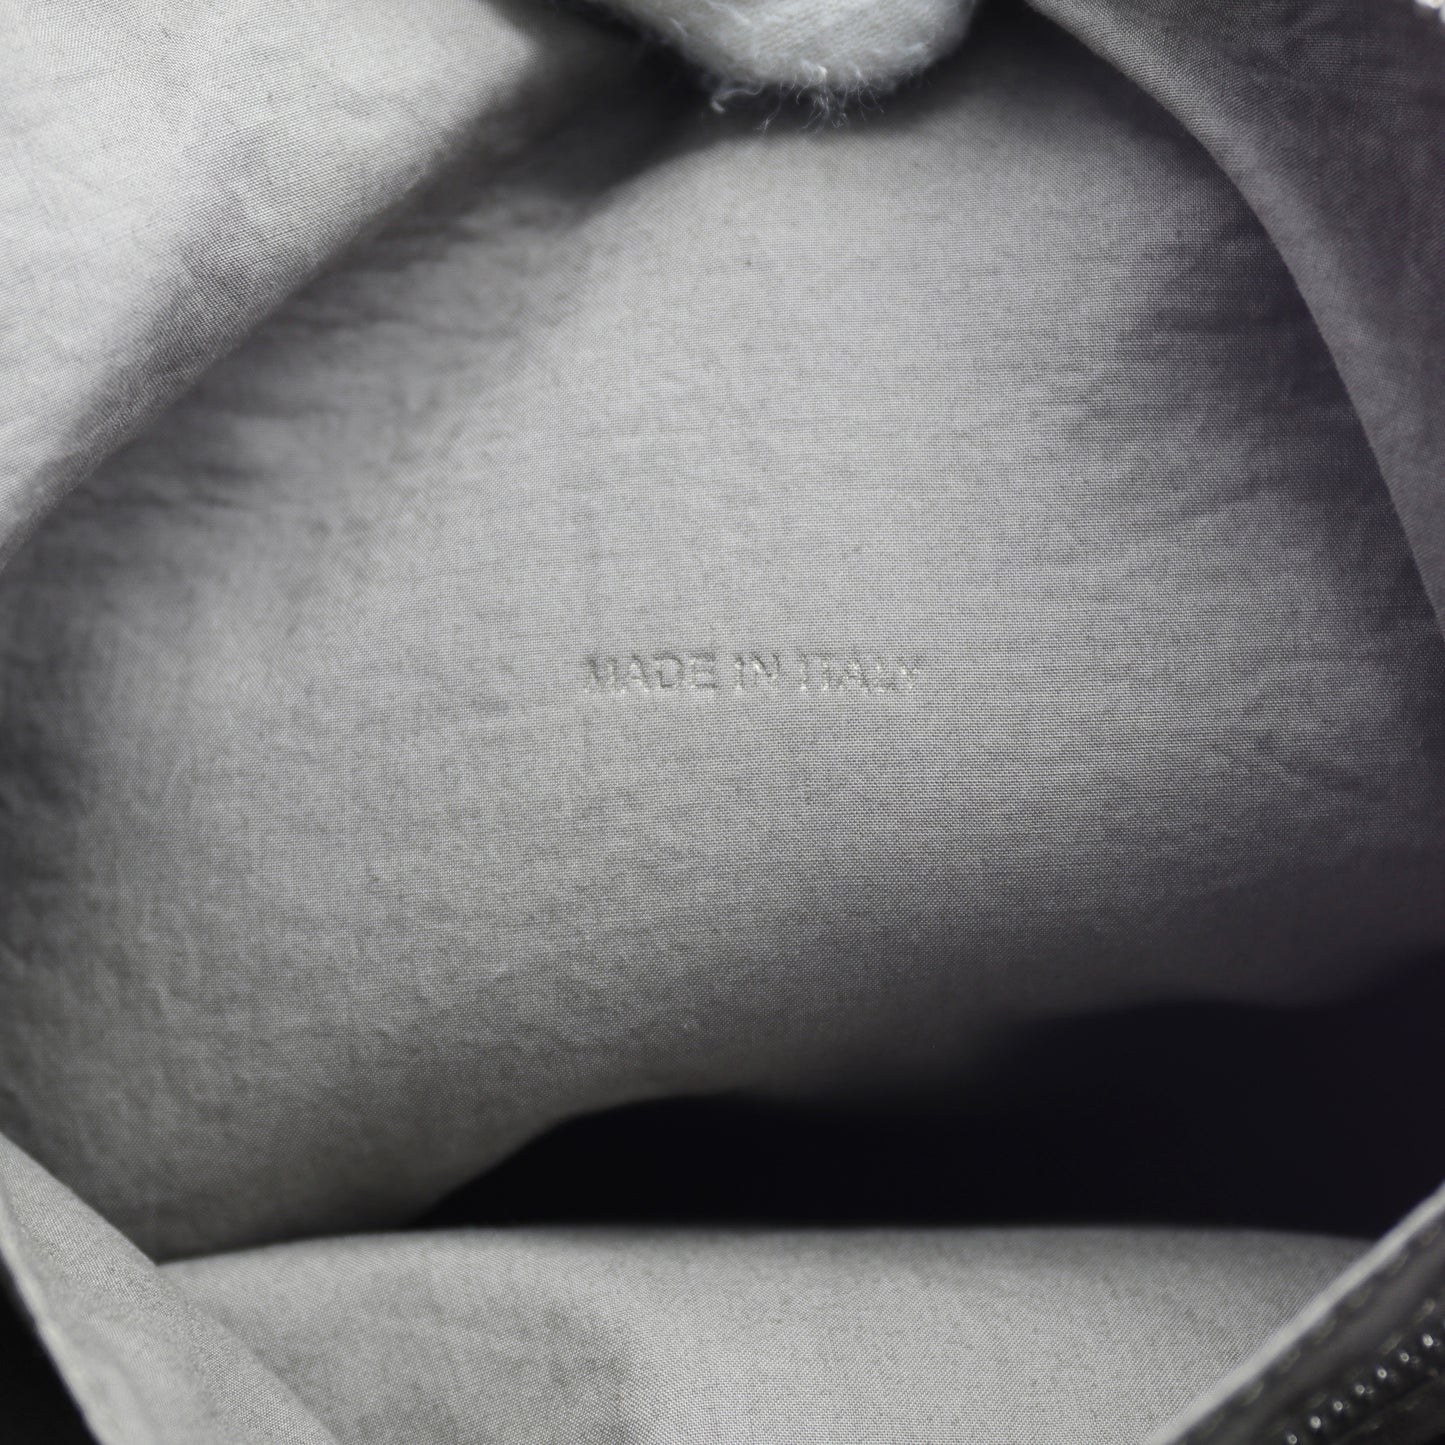 Rick Owens Shoulder Bag - Sand Tumbled Leather